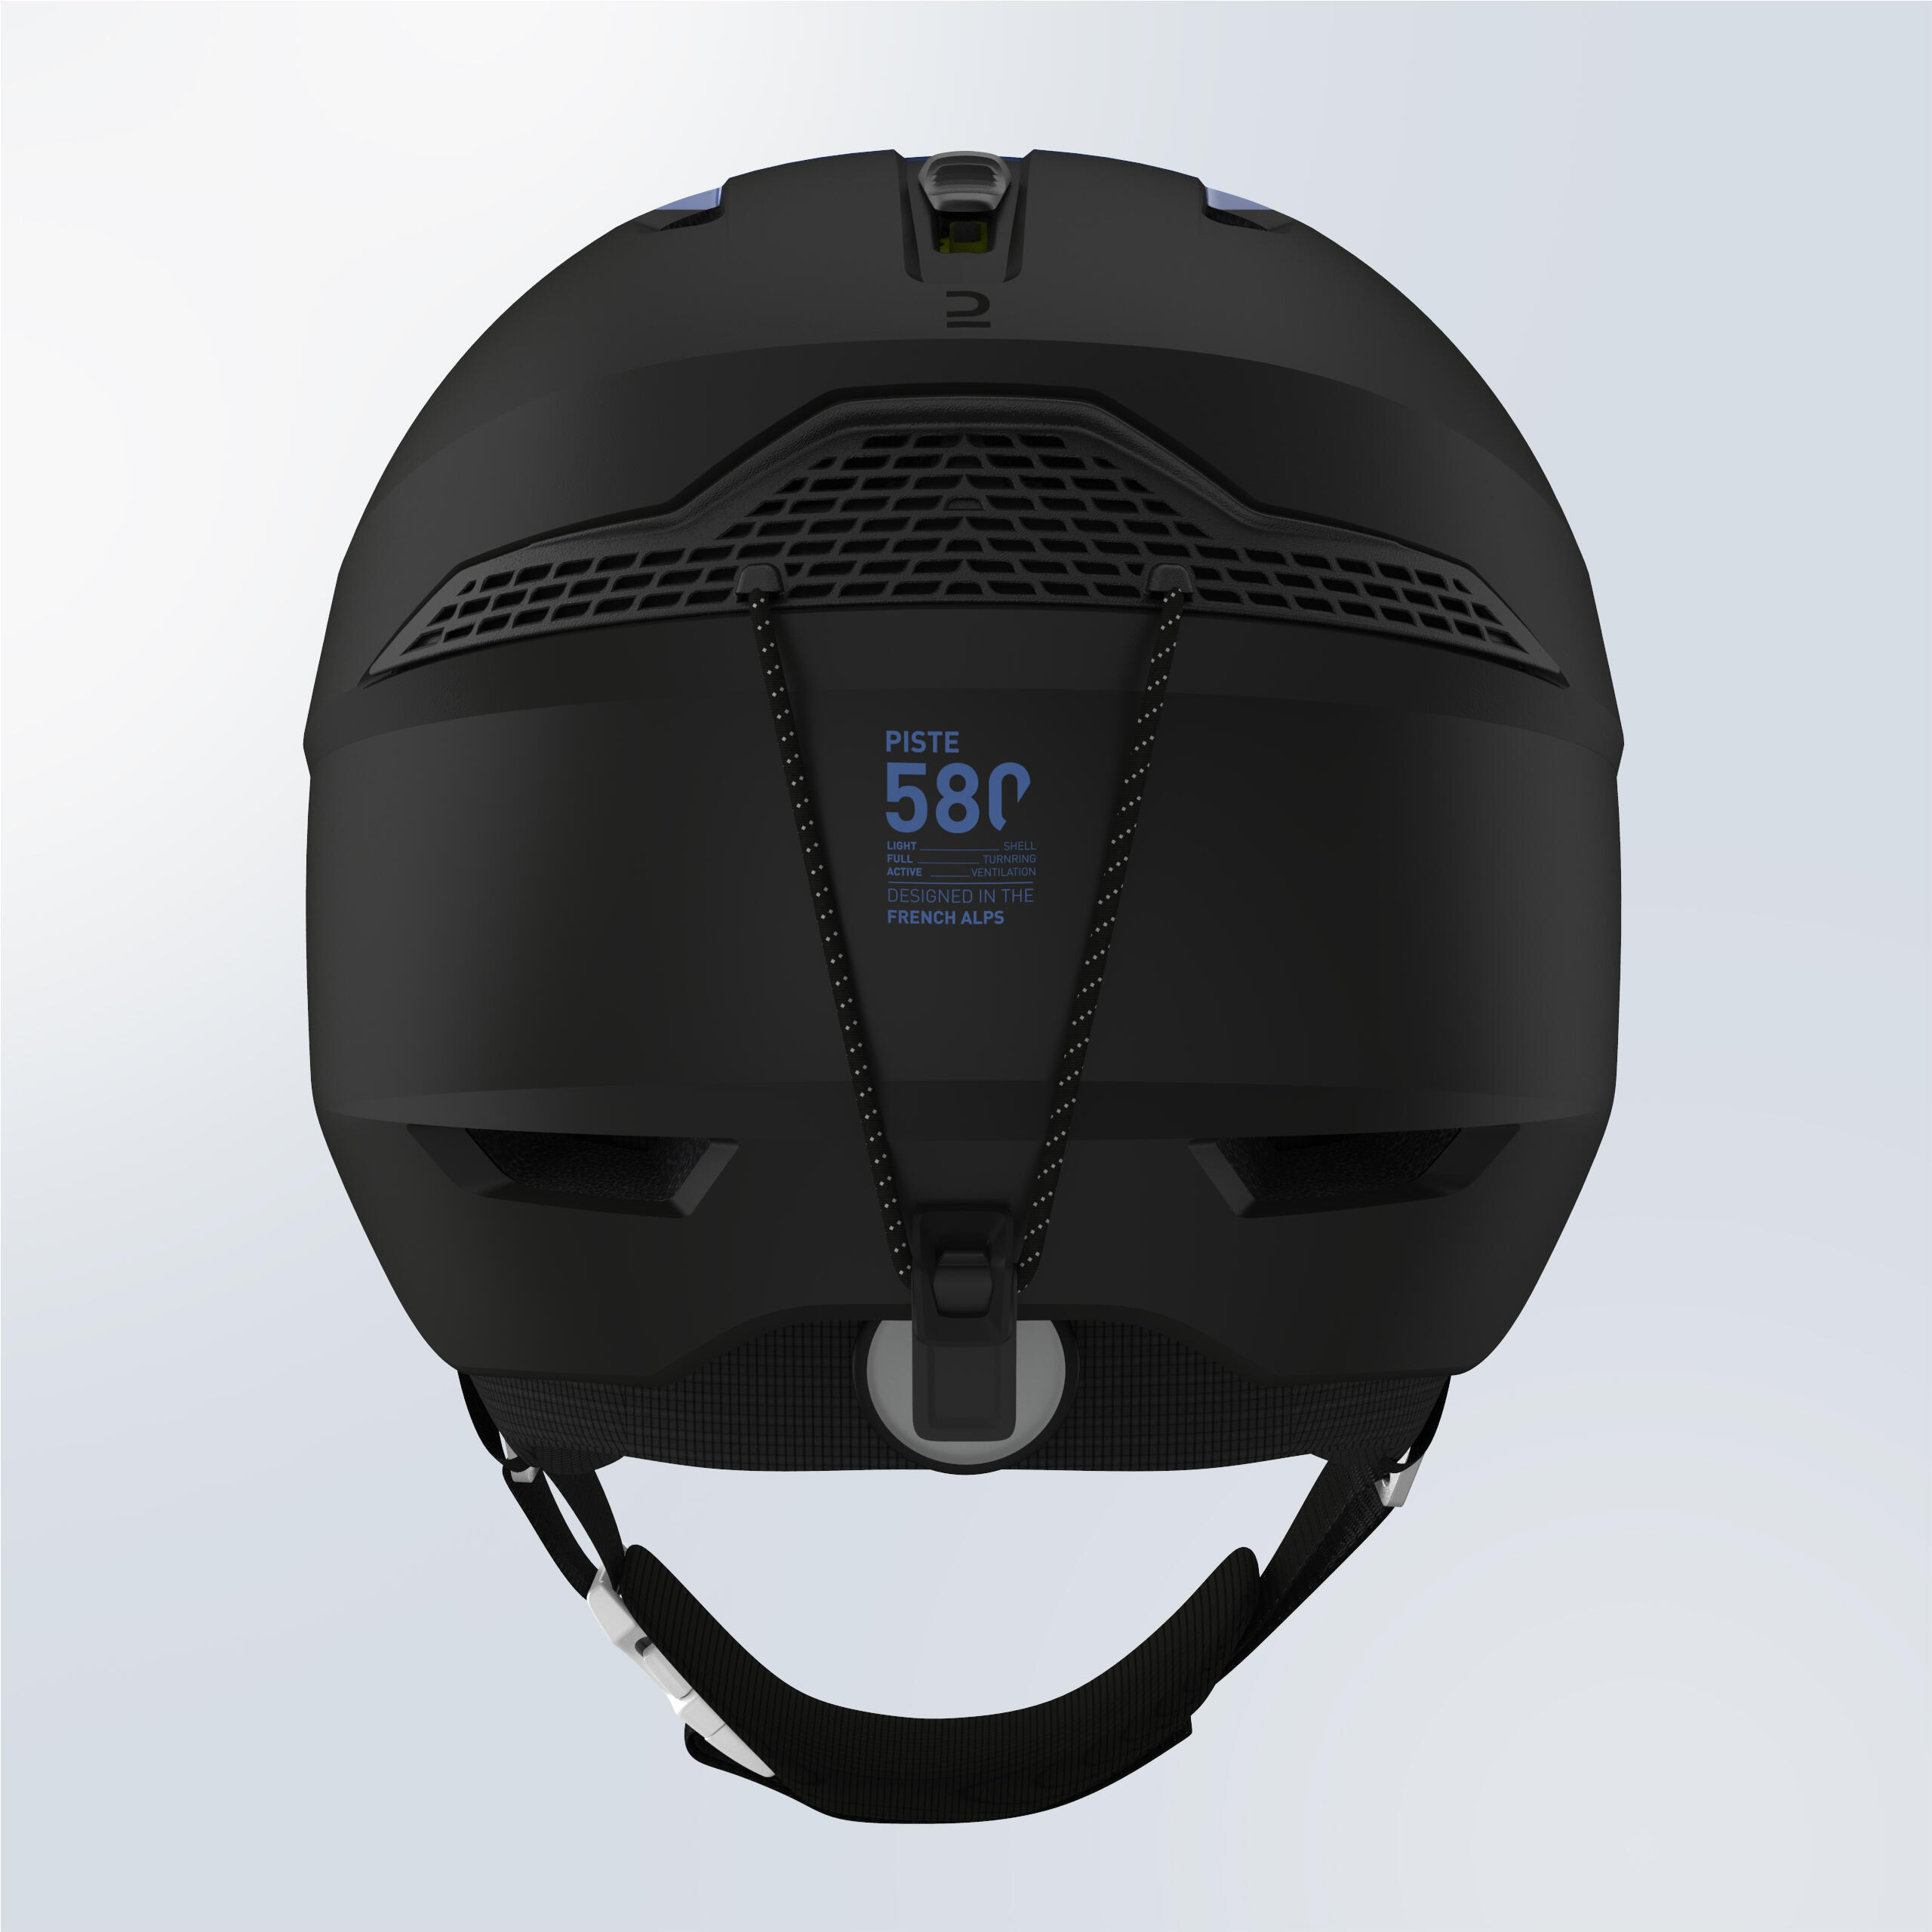 Adult ski helmet - PST 580 - Blue and black 6/7